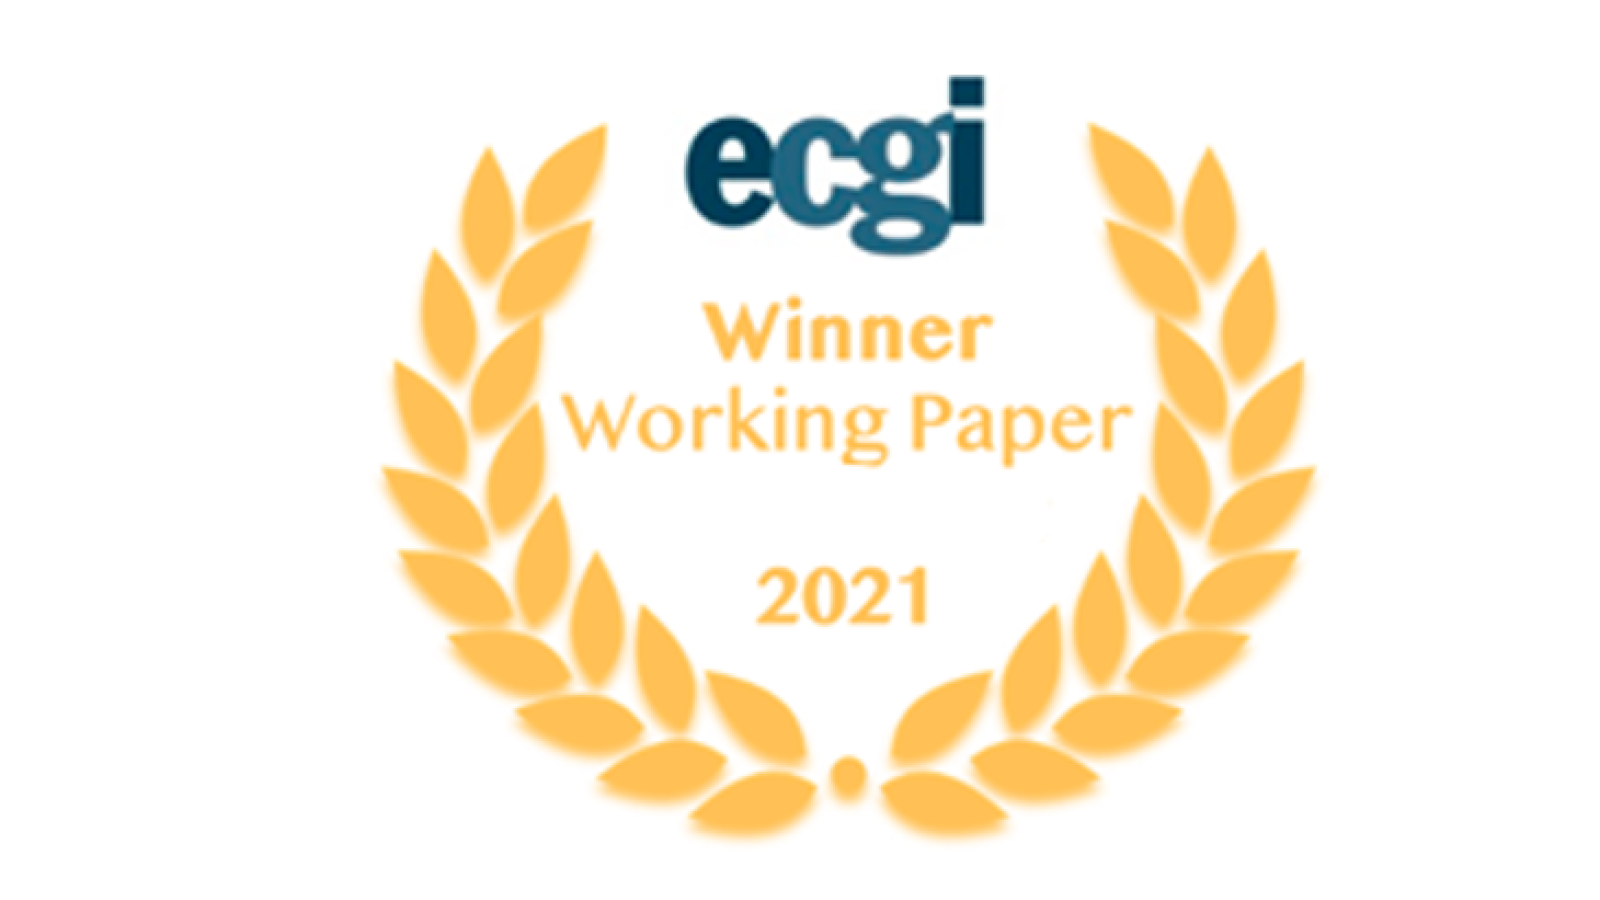 ECGI Winner working paper logo yellow leaves